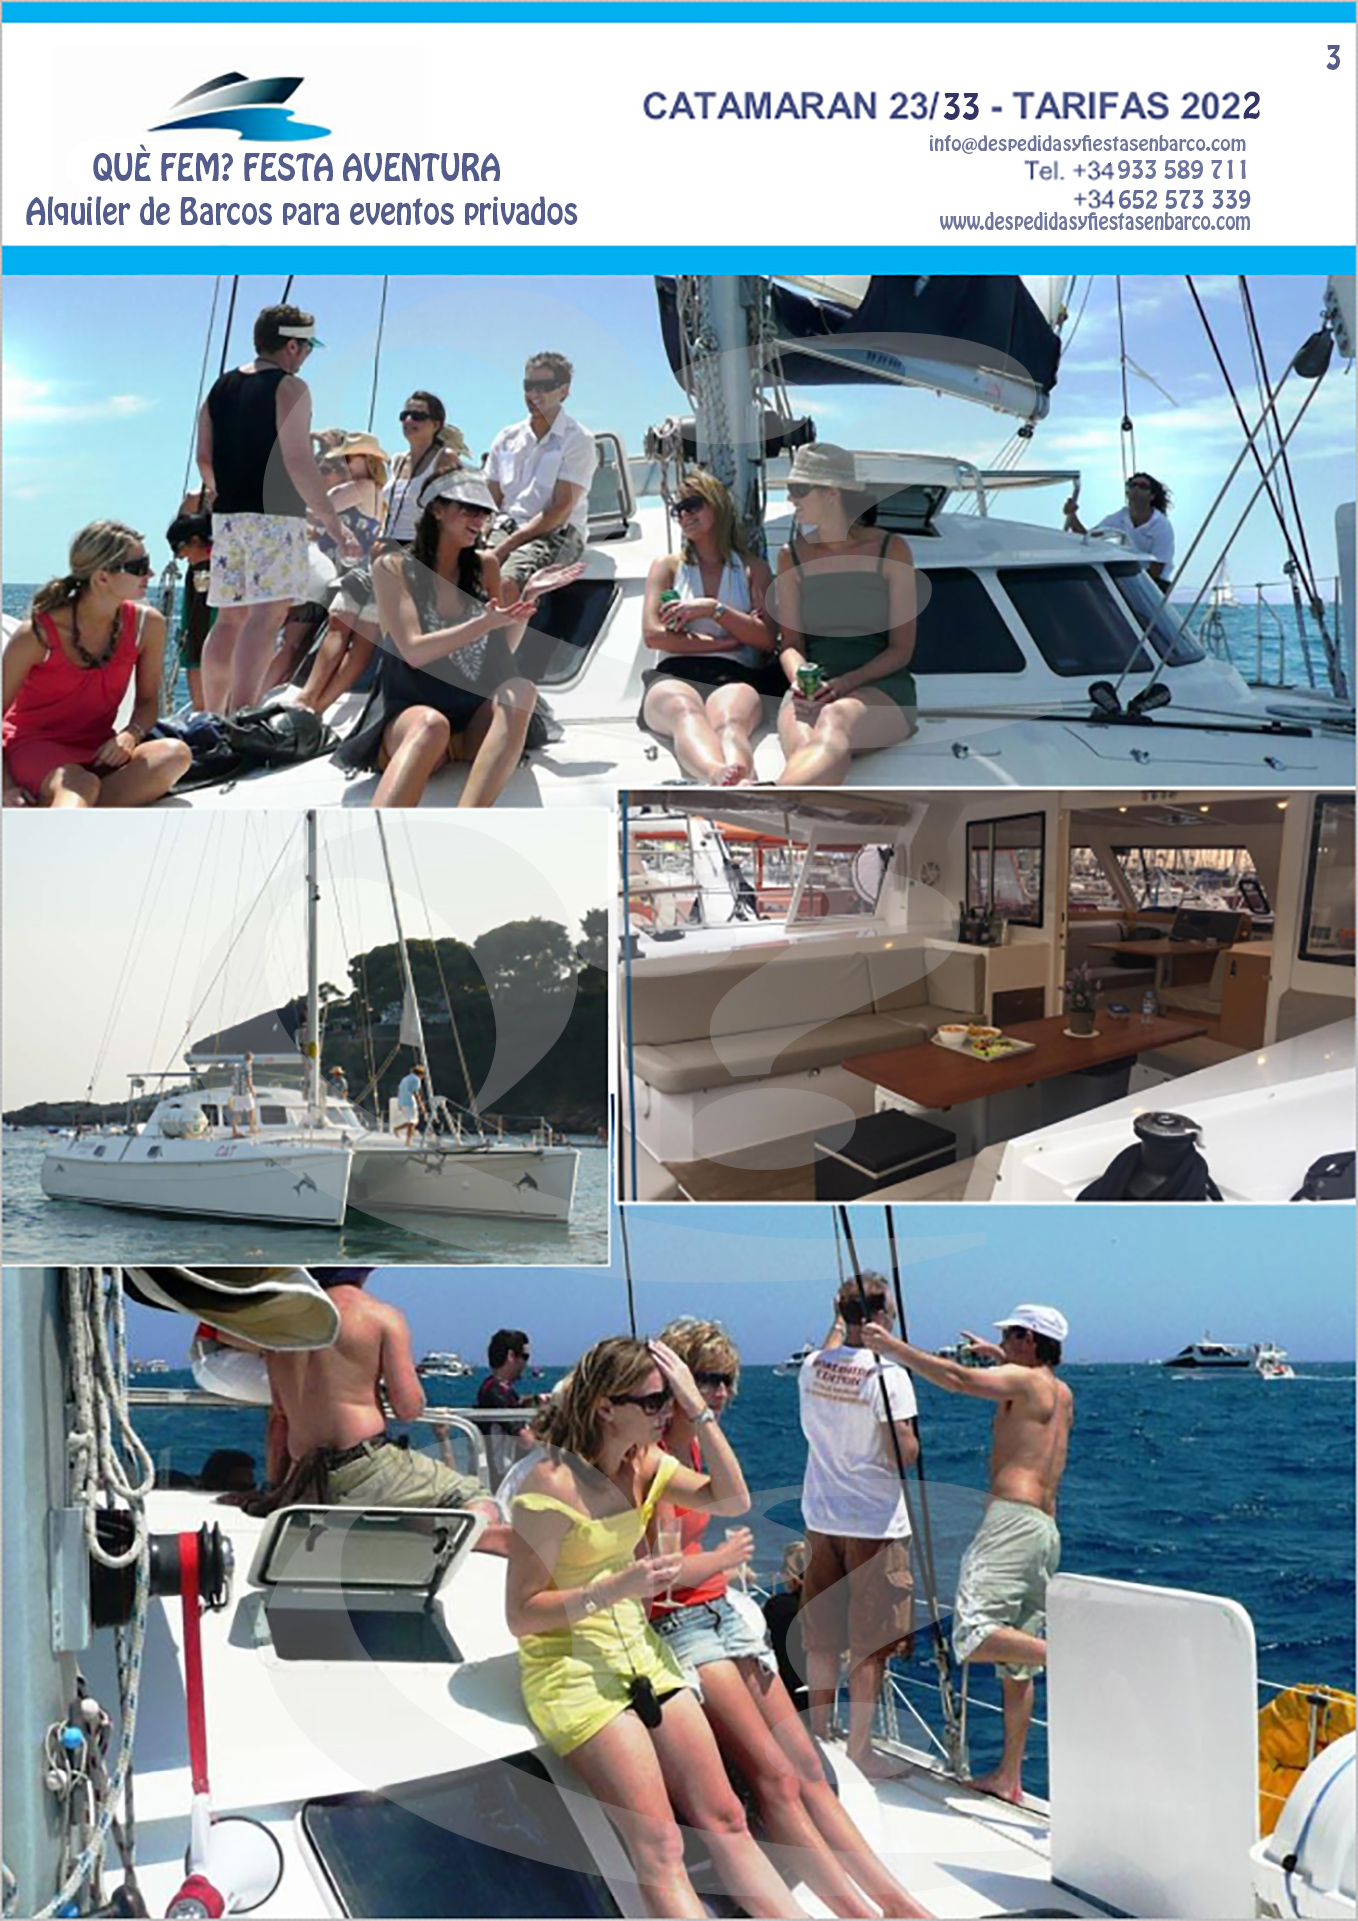 Alquiler de Barco Catamarán en Barcelona, ideal para grupos de despedida de soltera y soltero, cumpleaños y grupos de empresa